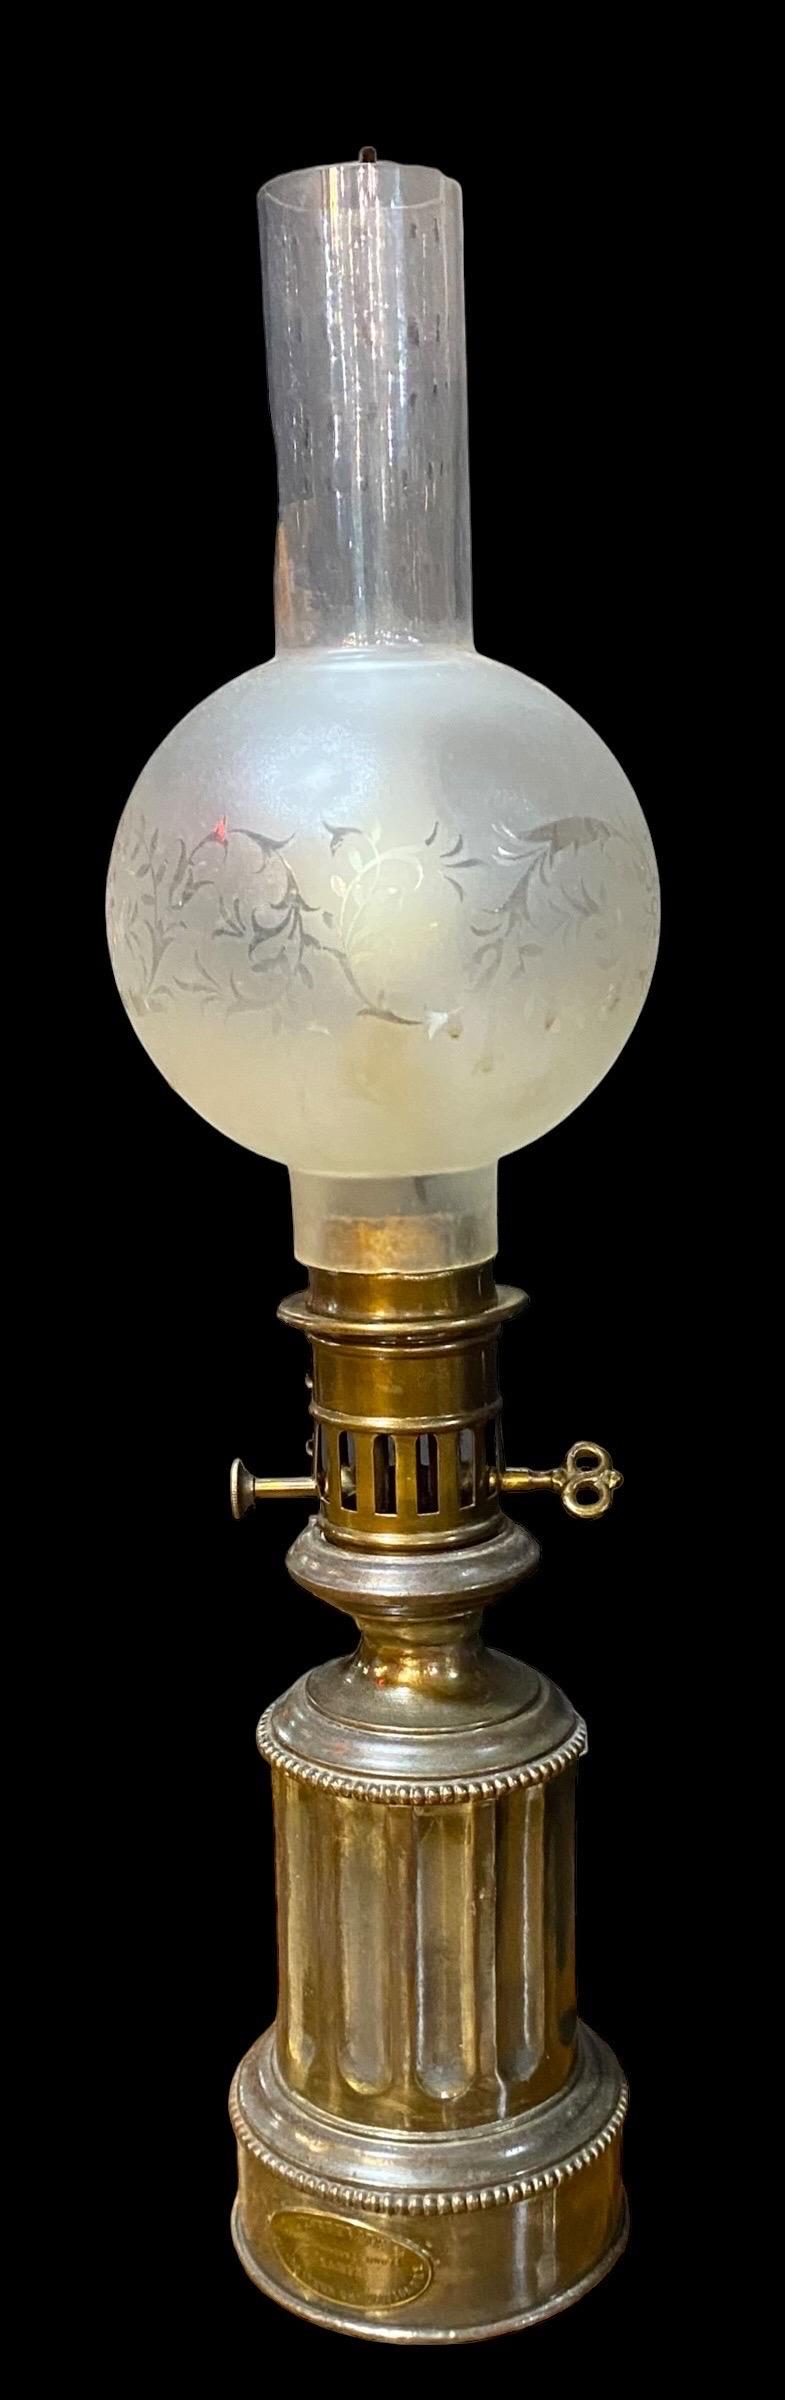 Ferronnerie Ancienne lampe modératrice française du milieu du 19e siècle maintenant électrifiée